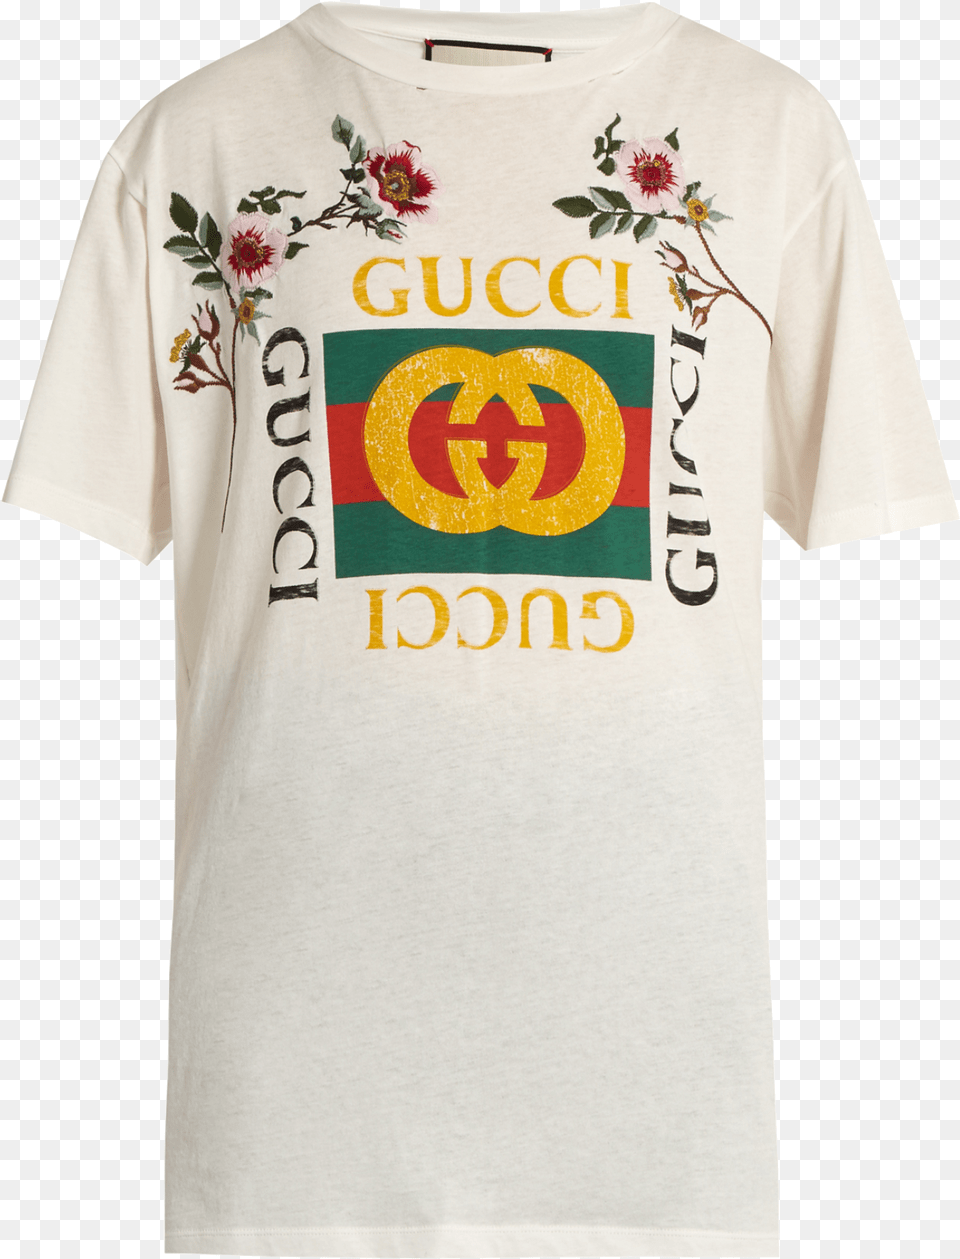 Gucci Shirt, Clothing, T-shirt Png